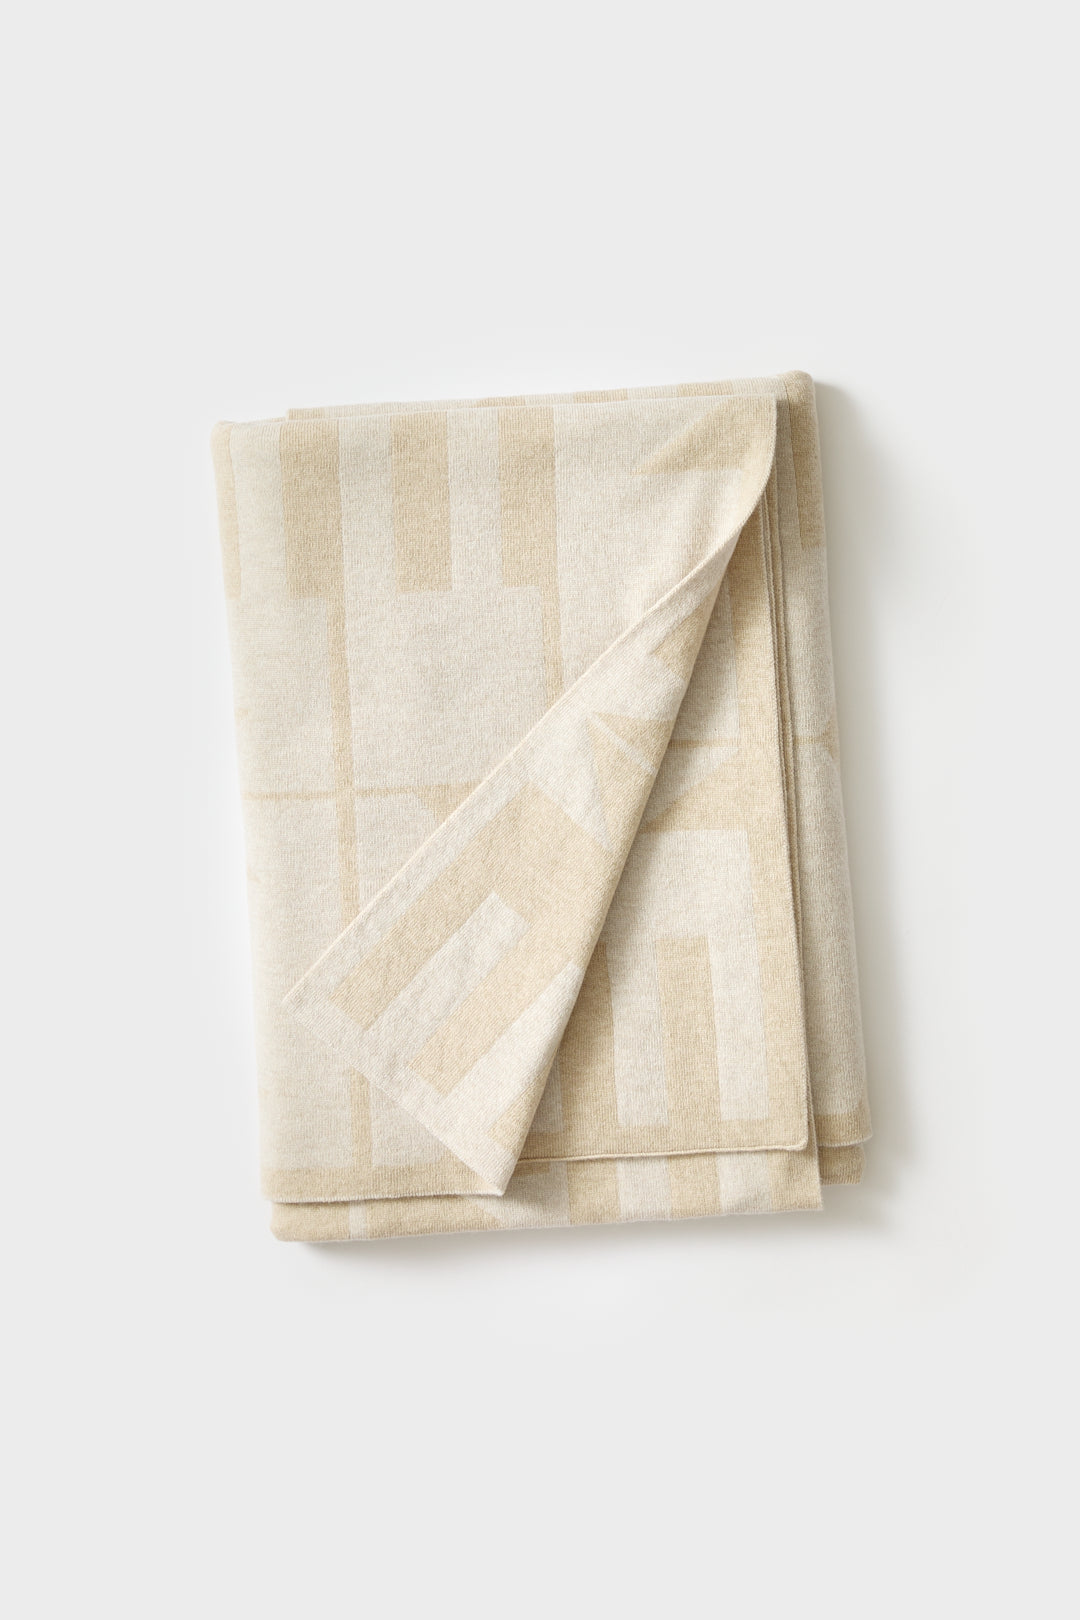 Blanket "Keel" - Oatmeal & Swansdown